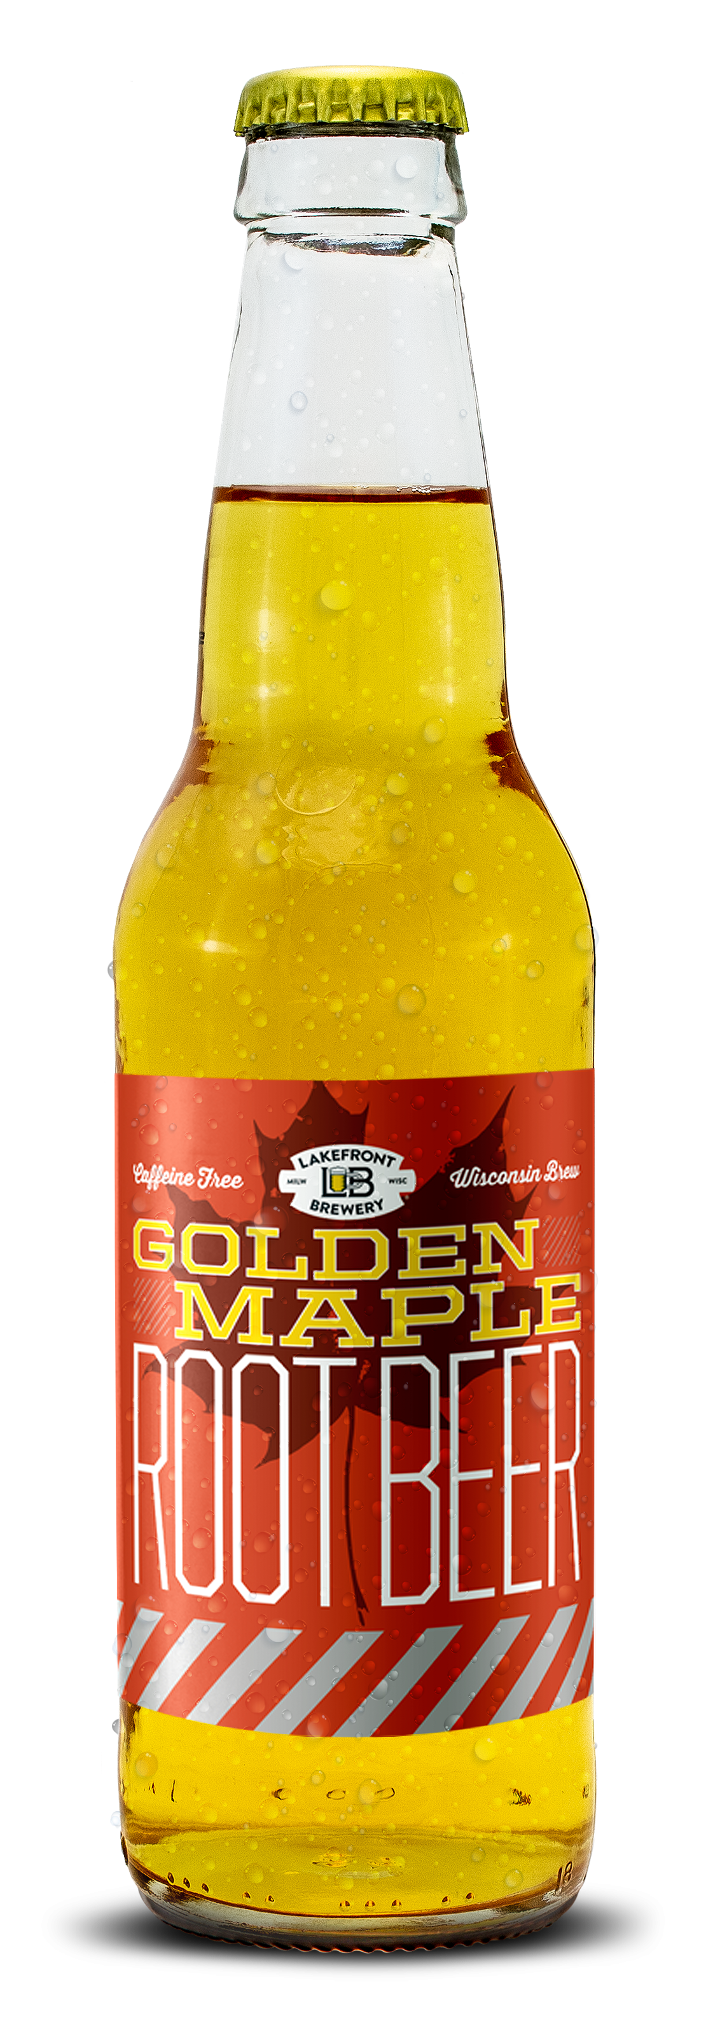 Bottle of Golden Maple Root Beer